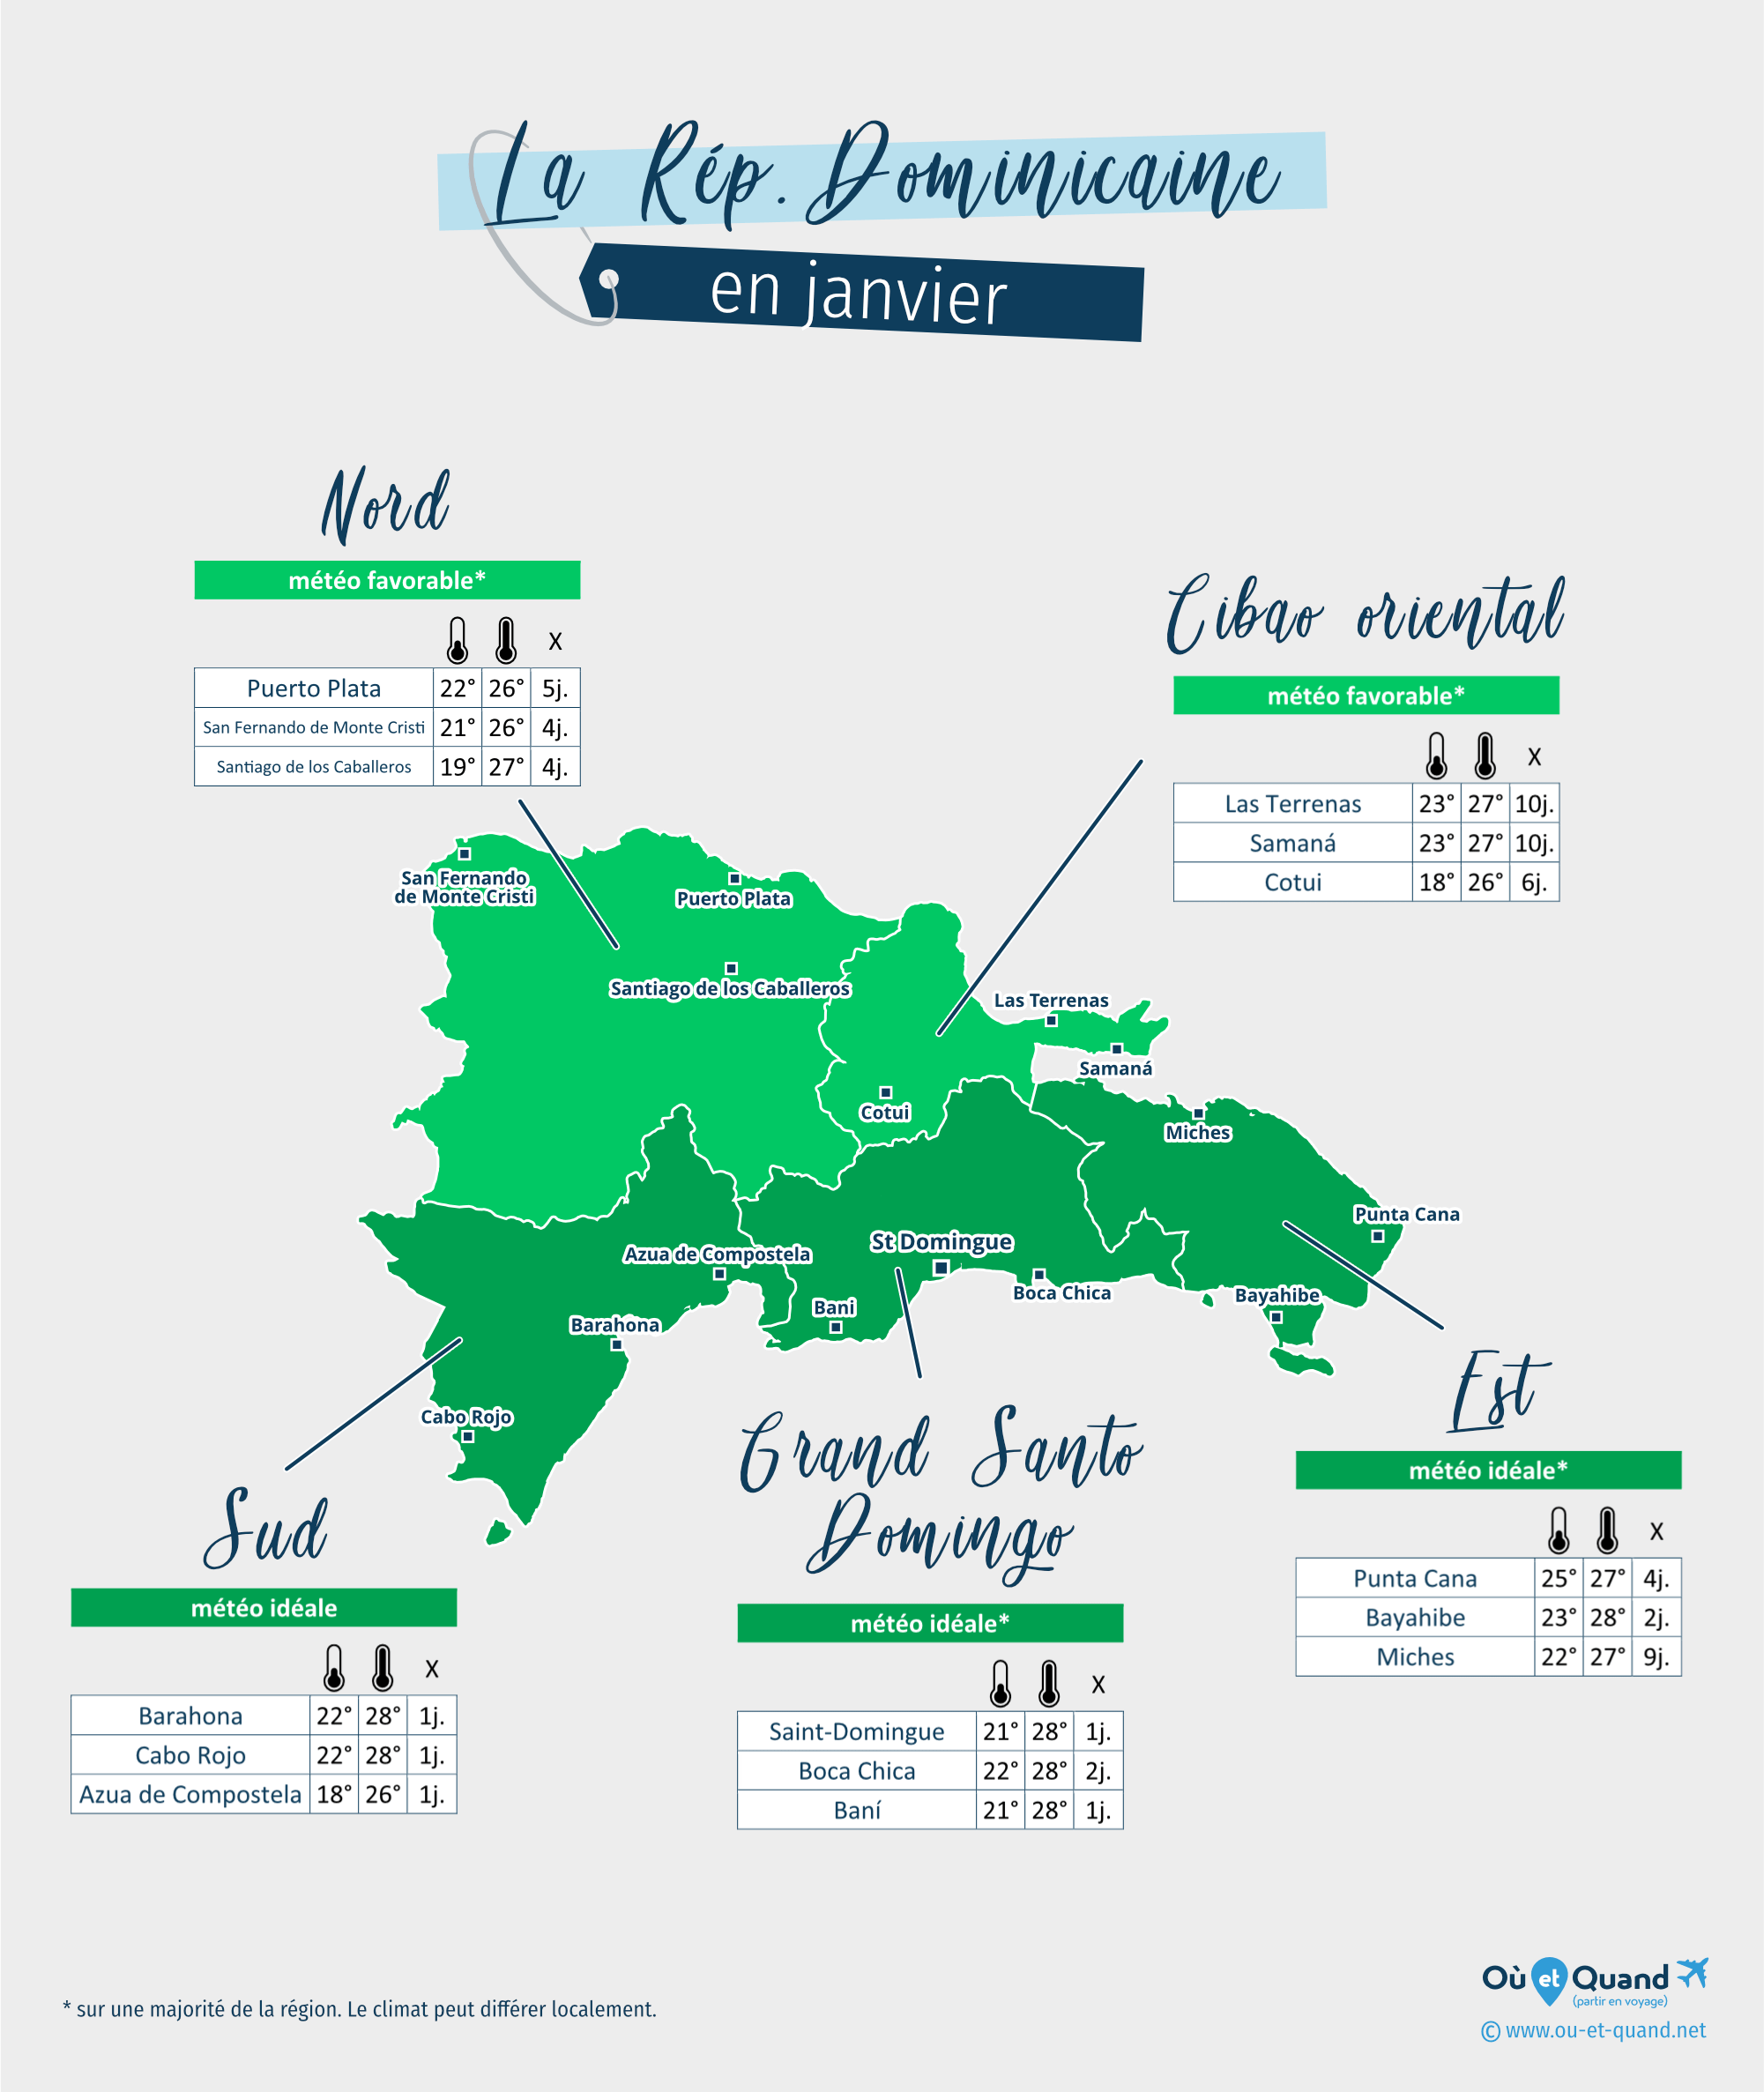 Carte de la météo en janvier dans les régions de la République Dominicaine